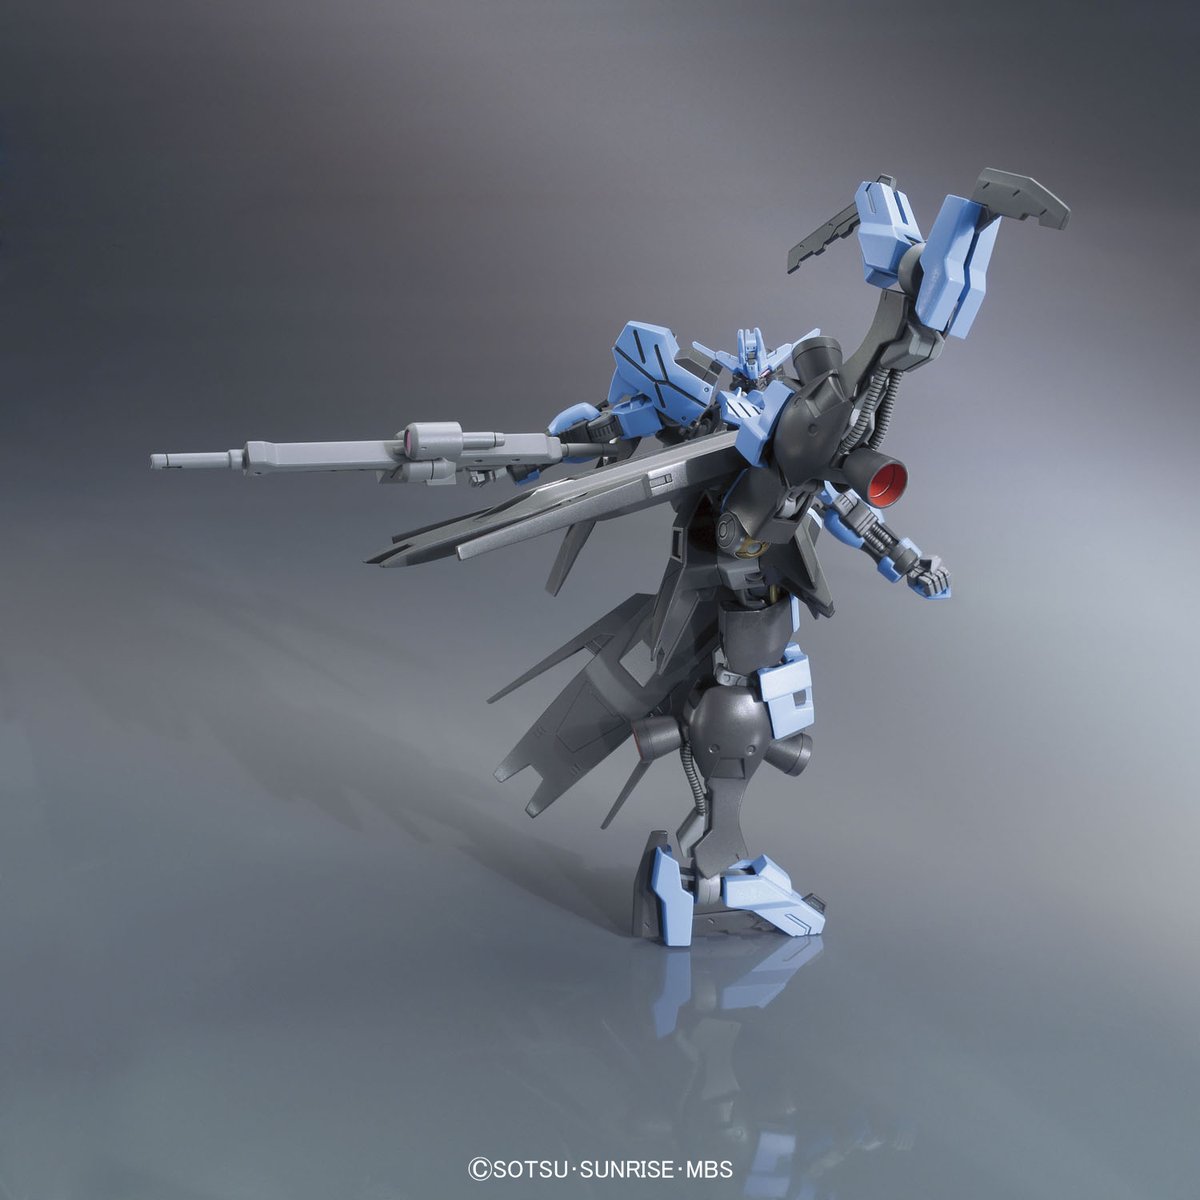 HG 1/144 Gundam Vidar - Release Info, Box art and Official Images